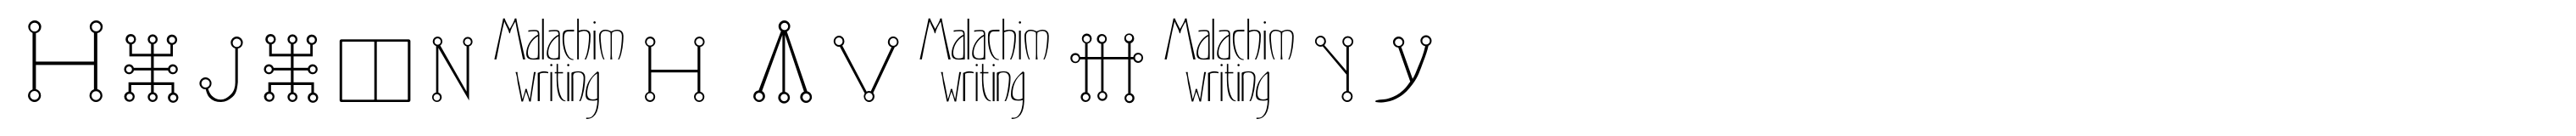 Malachim Writing